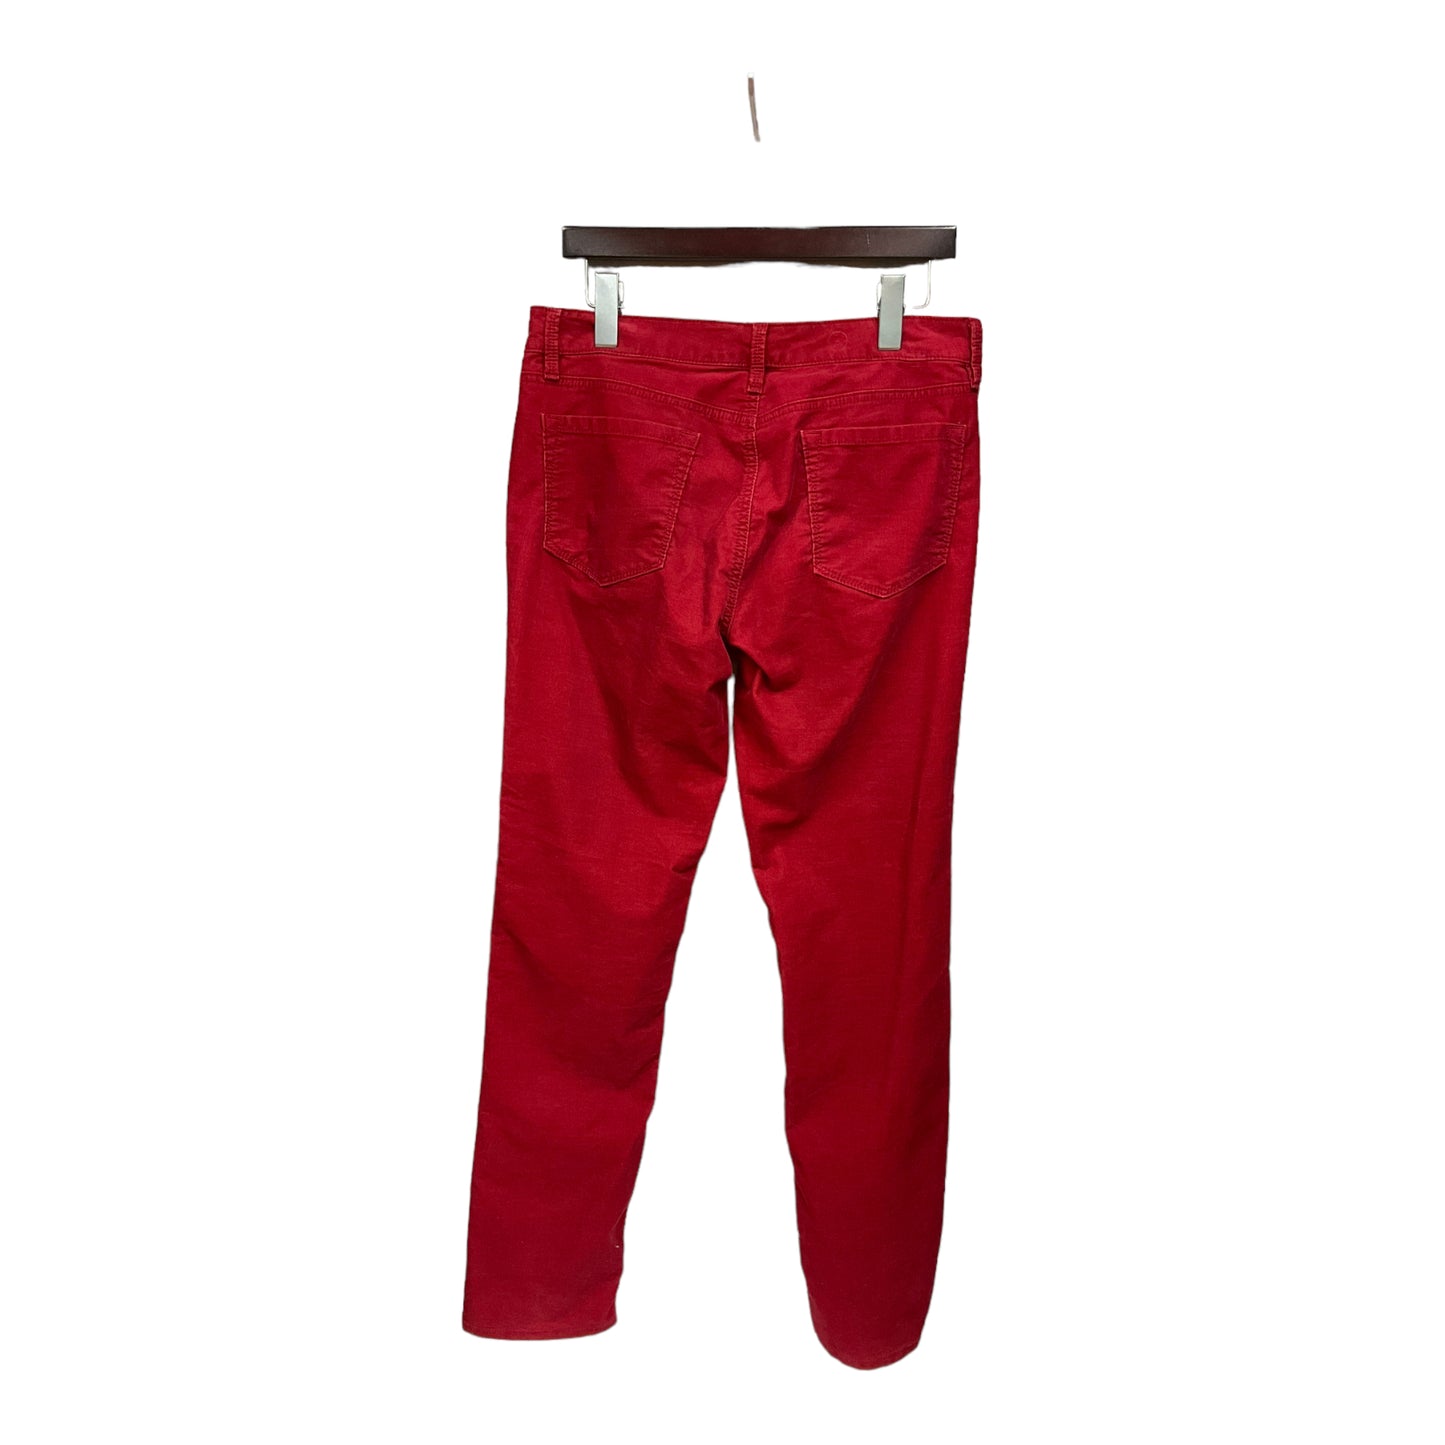 Pants Corduroy By Loft  Size: 8